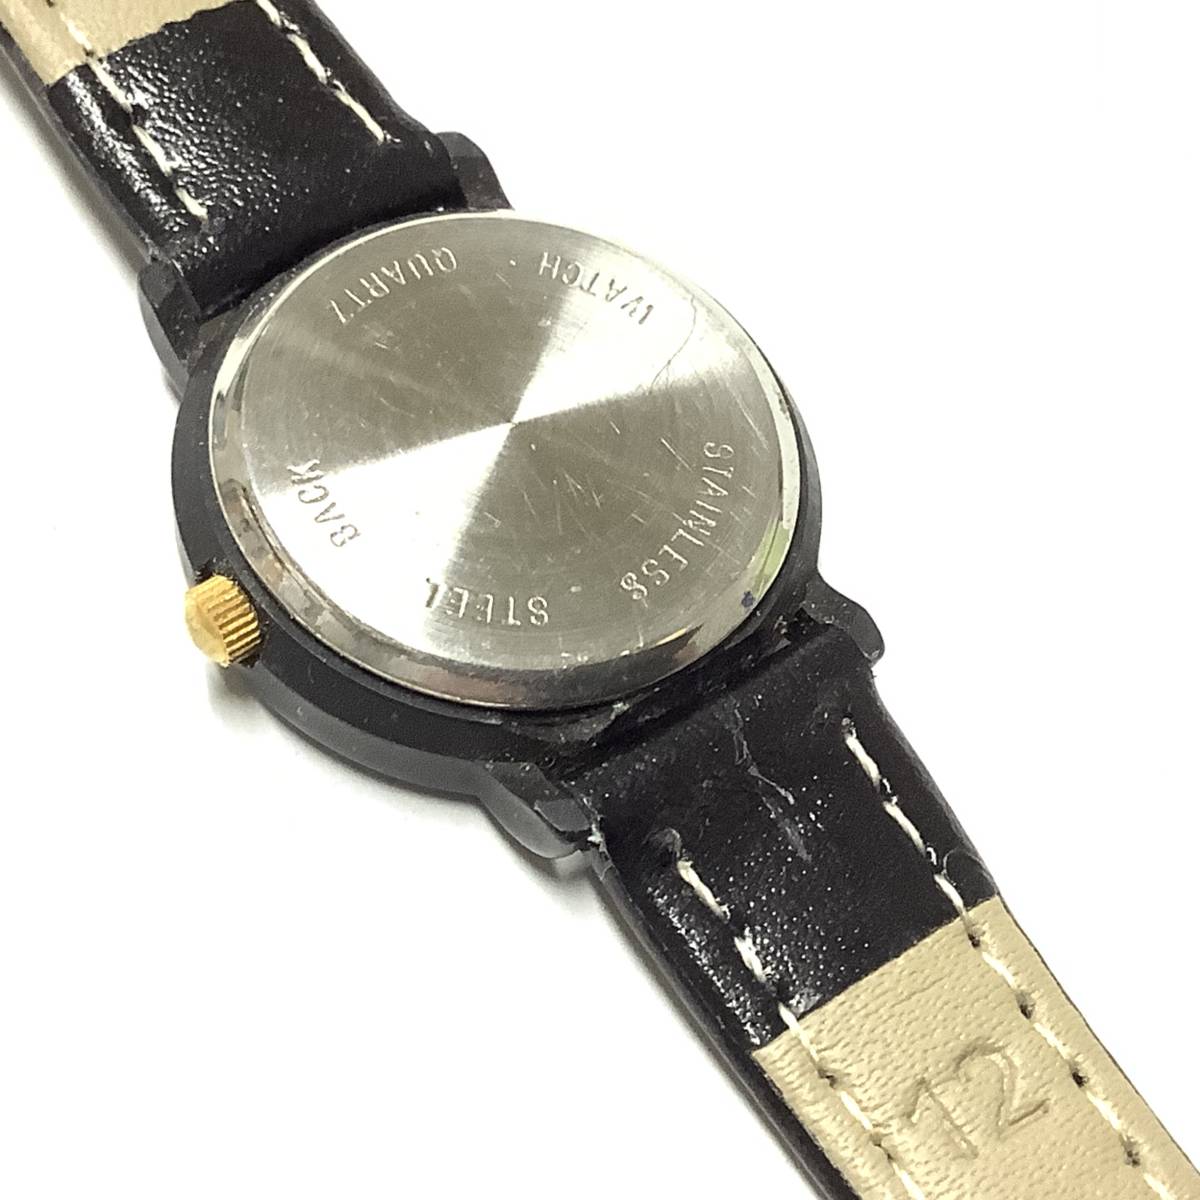 [ Showa Retro * Vintage, батарейка & заменен ремень ] сделано в Японии Disney Disney Minnie Mouse наручные часы герой часы 